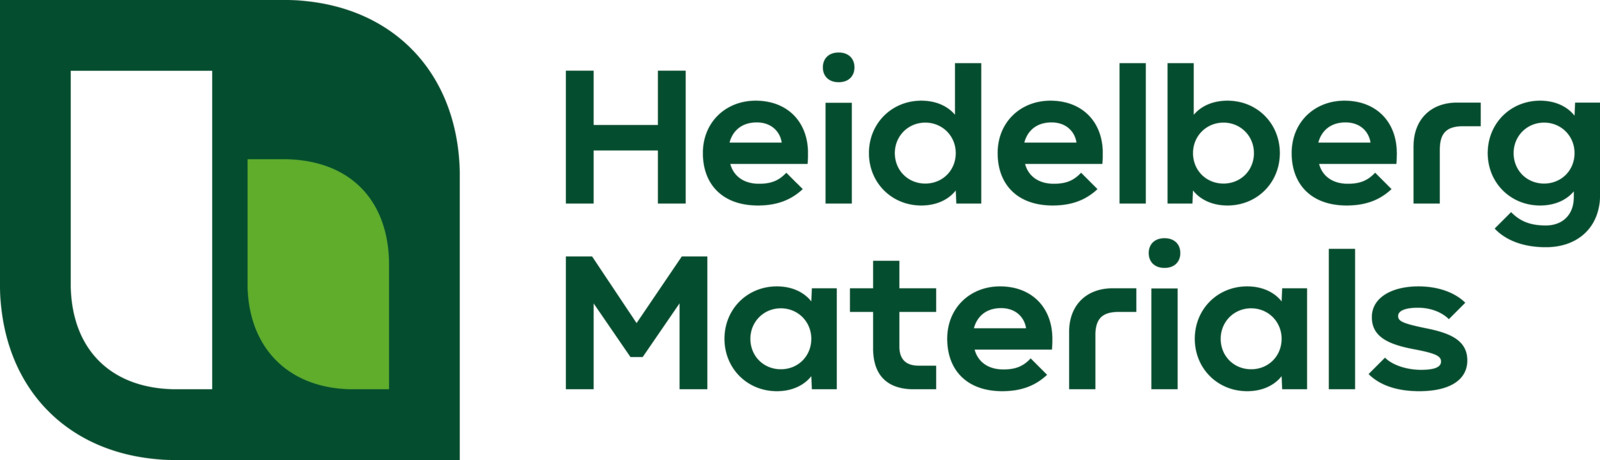 Das neue Logo von Heidelberg Materials vereint die traditionellen Werte und Zukunftsfelder des Konzerns.